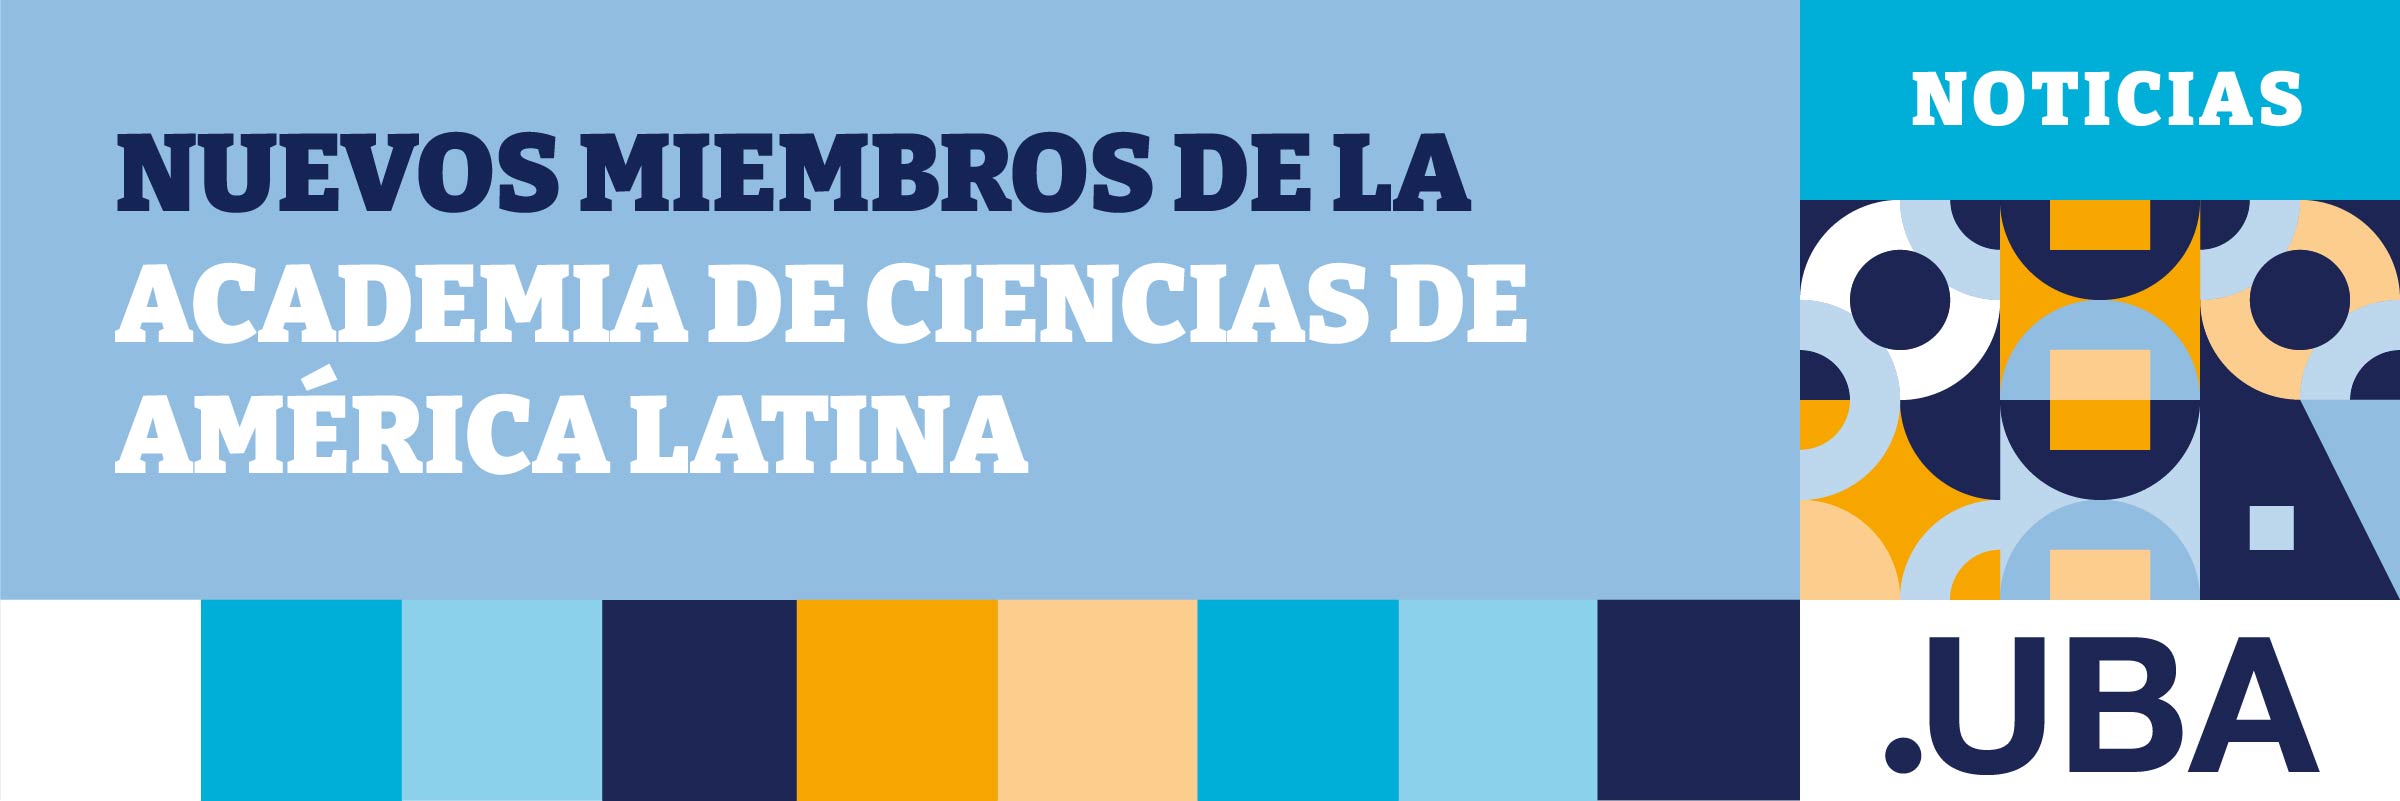 Nuevos miembros de la Academia de Ciencias de América Latina